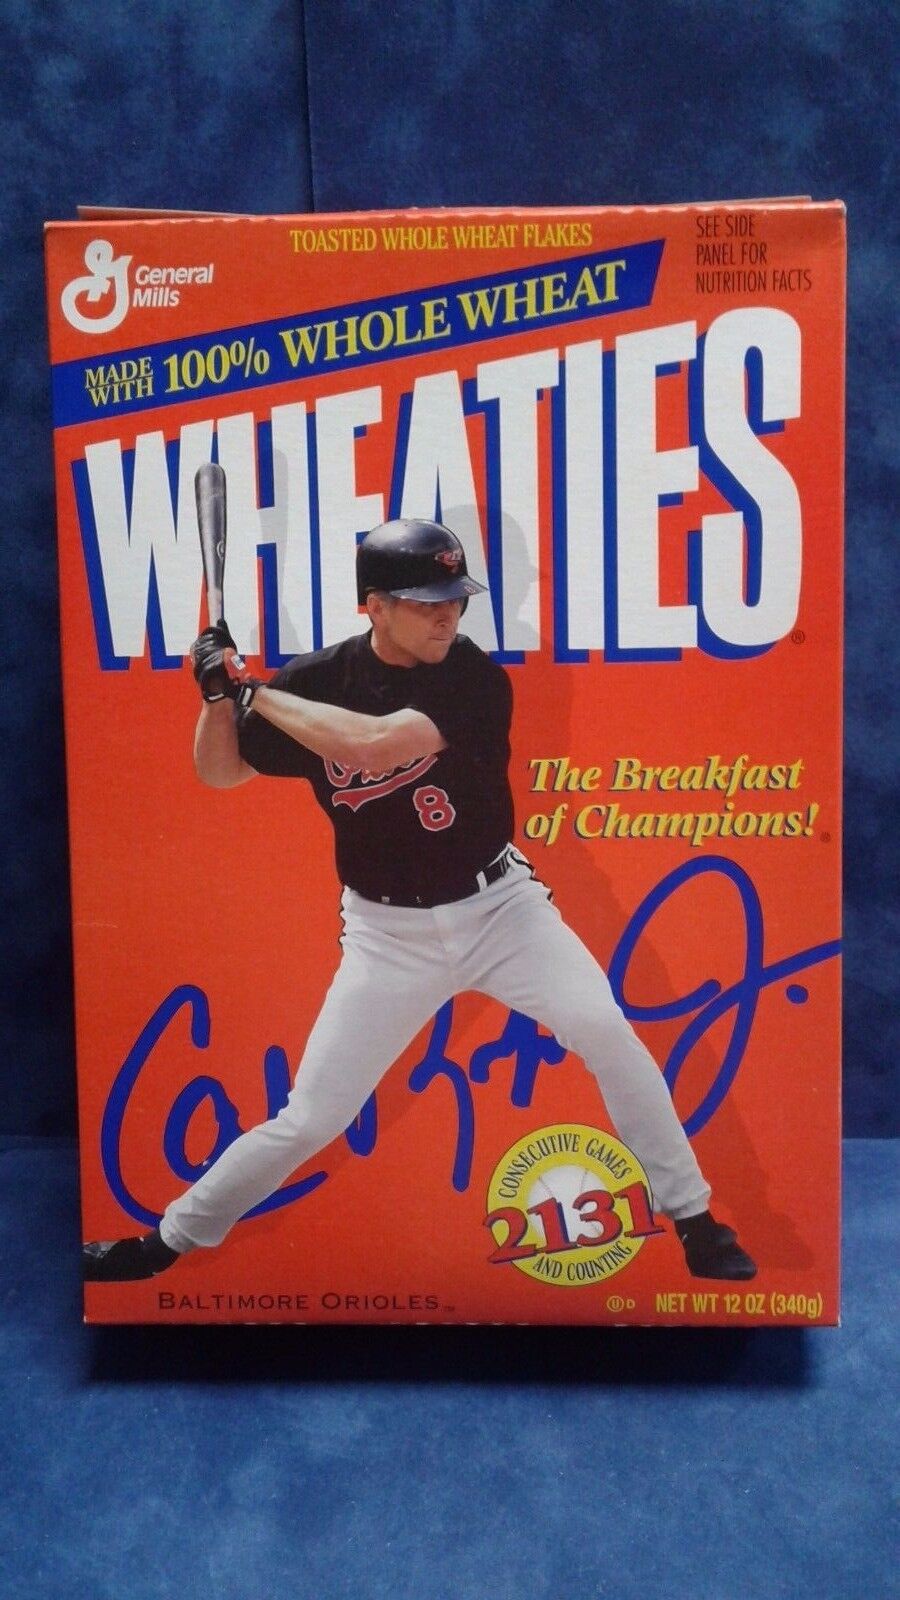 Wheaties Cal Ripken Jr 8 Cereal Box Baltimore Orioles 2131 Consecutive Games